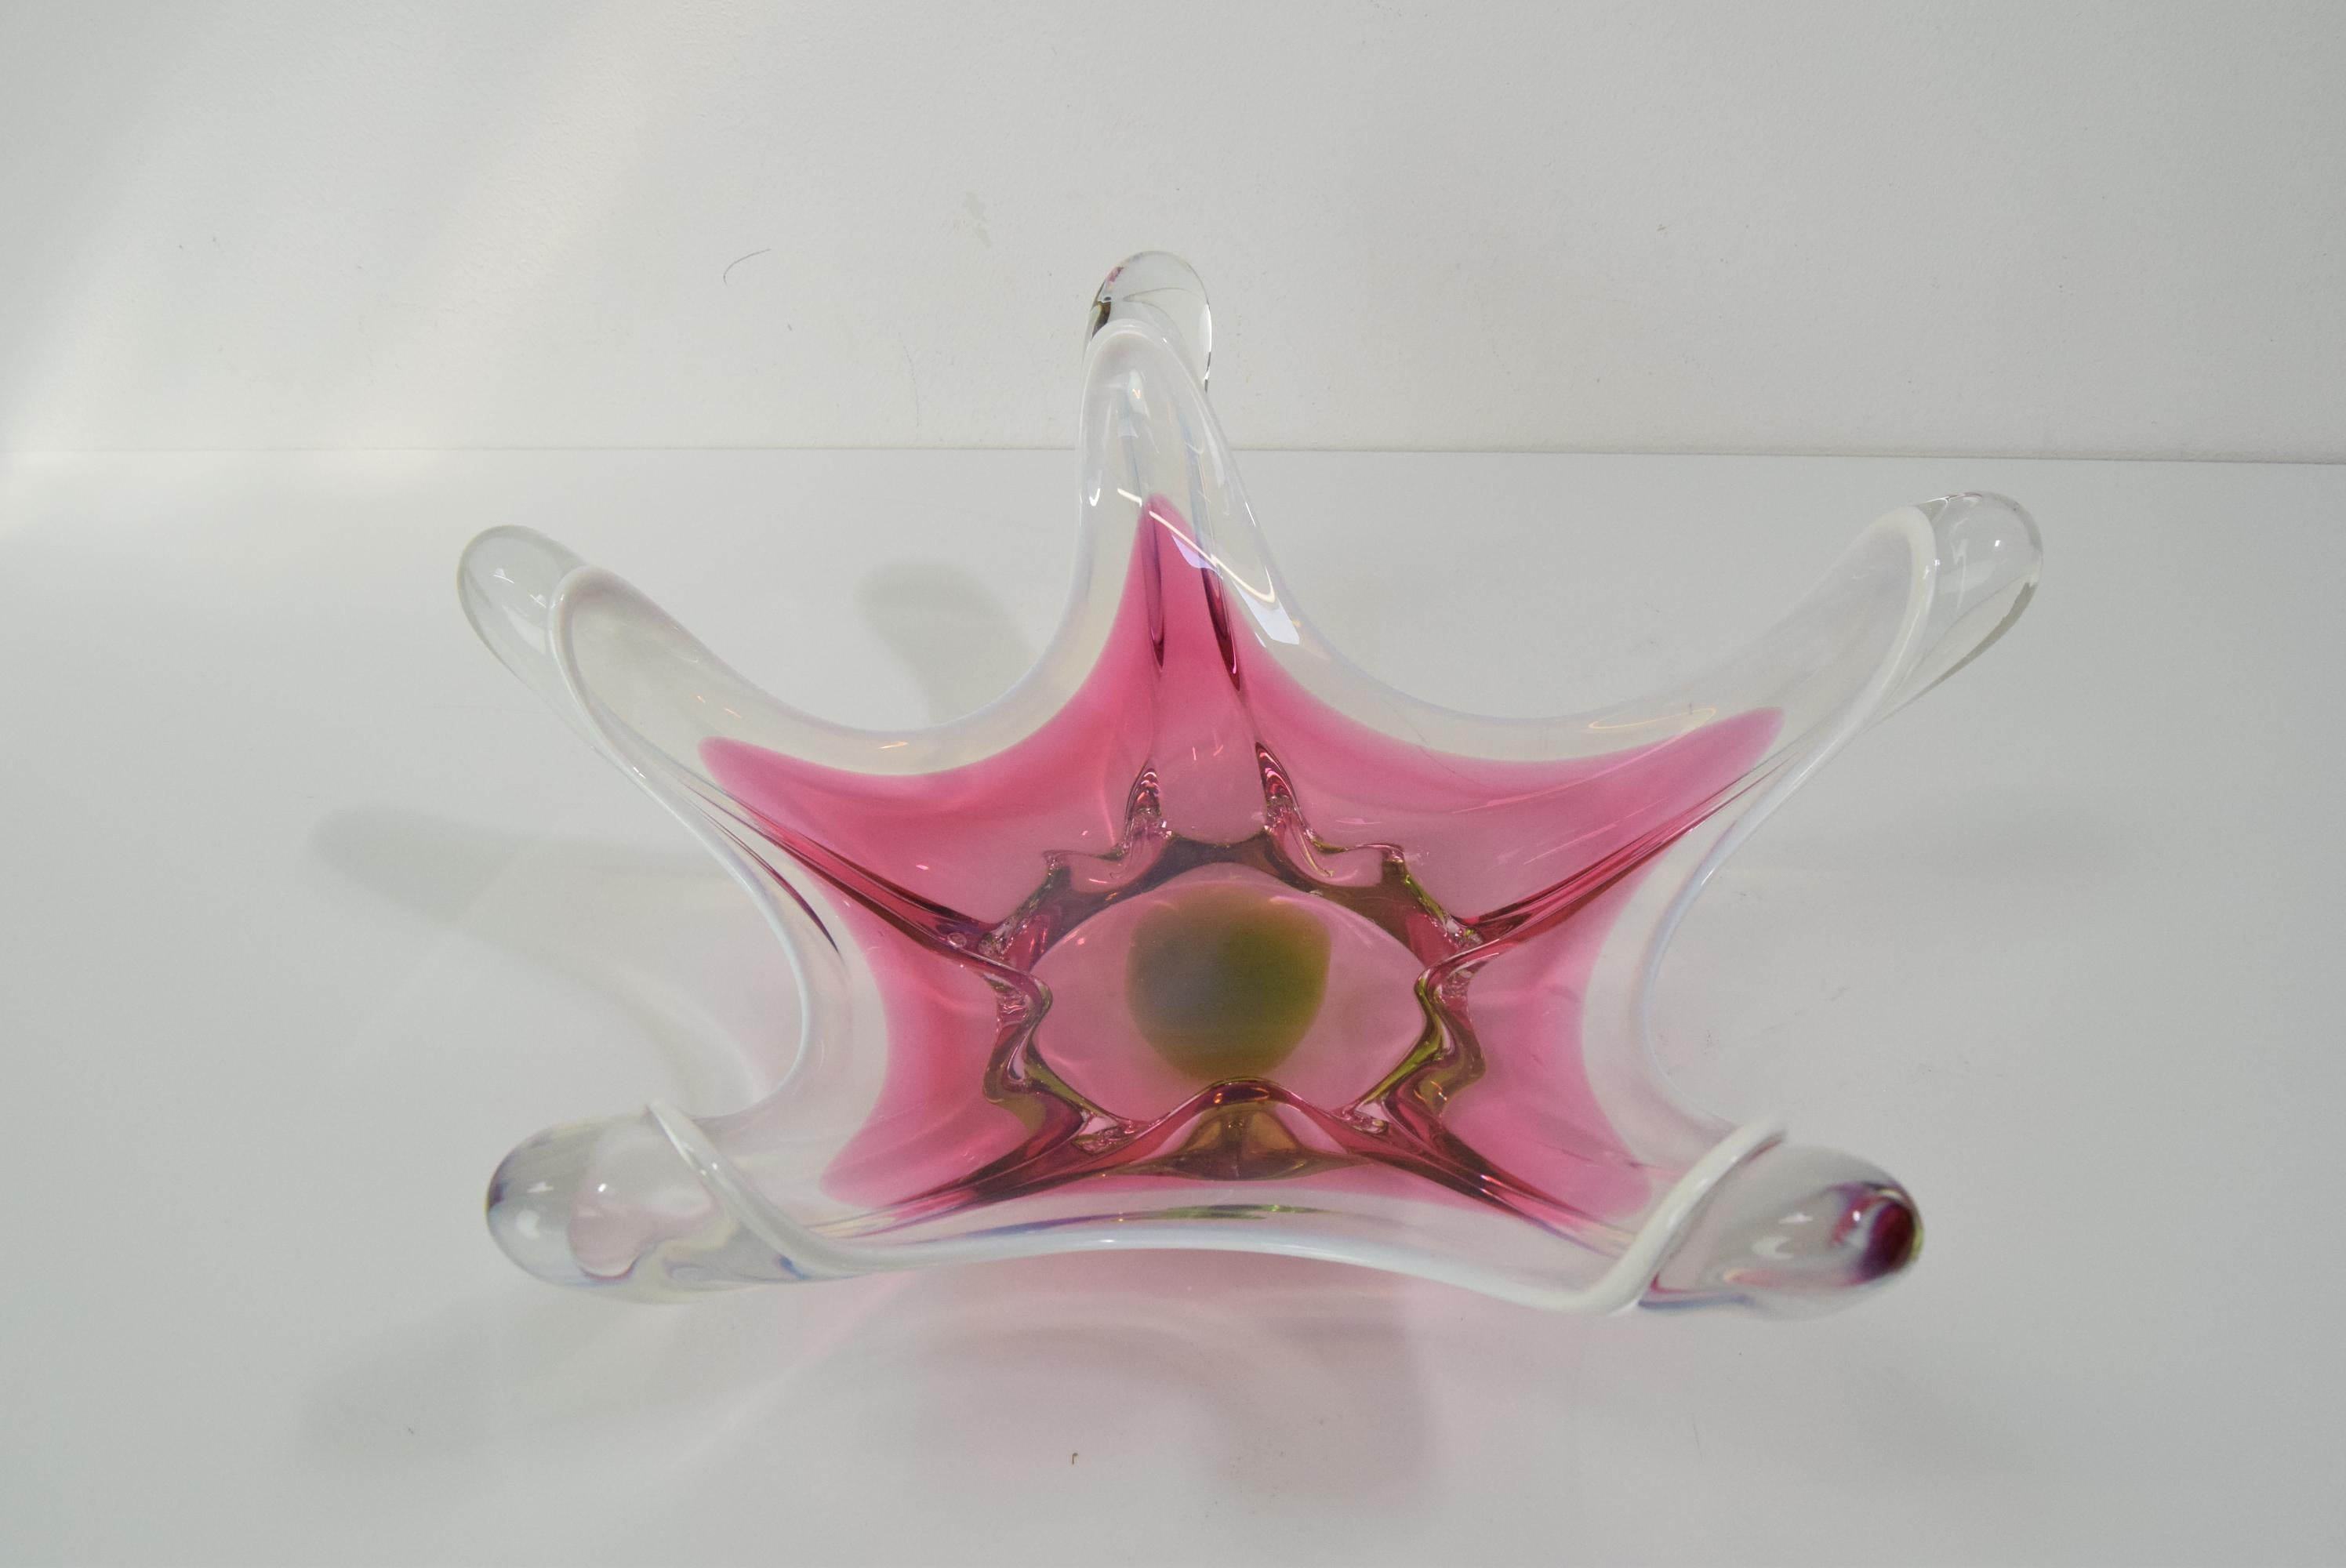 Mid-20th Century Czech Art Glass Bowl by Josef Hospodka for Chribska Glasswork, 1960's For Sale